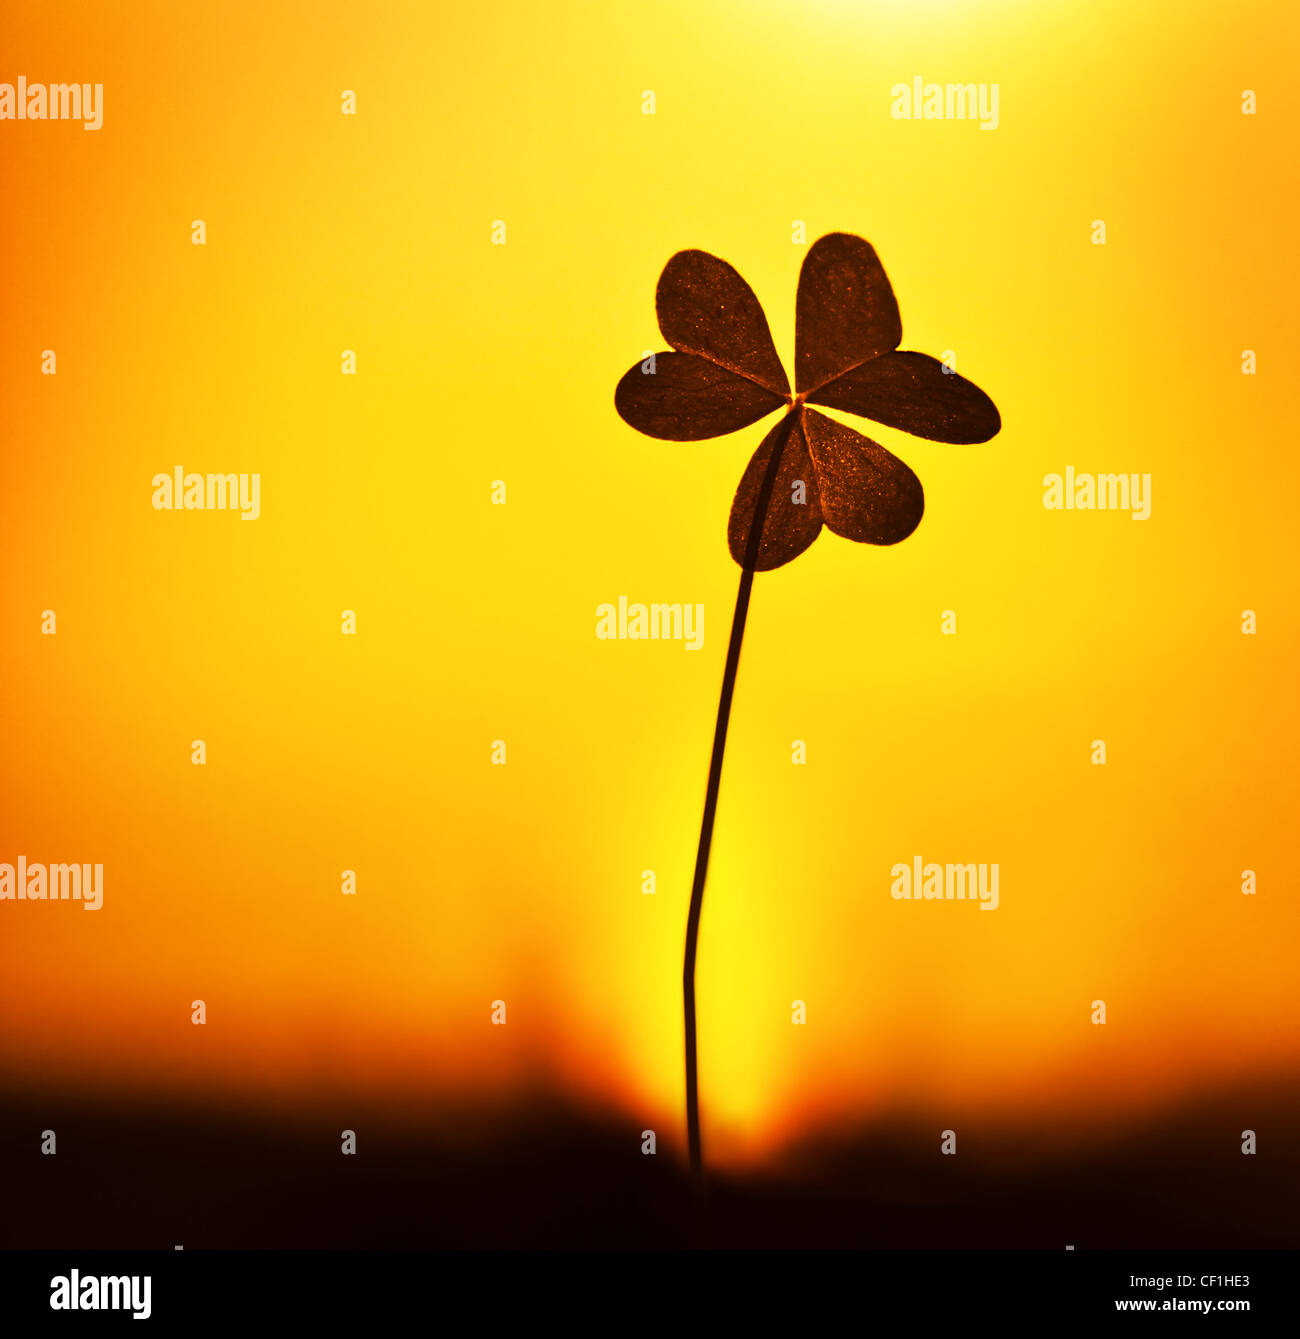 Klee bei Sonnenuntergang, Silhouette Shamrock Pflanze über warmen gelben Himmelshintergrund, abstrakte florale Bild, Frühling Natur Stockfoto